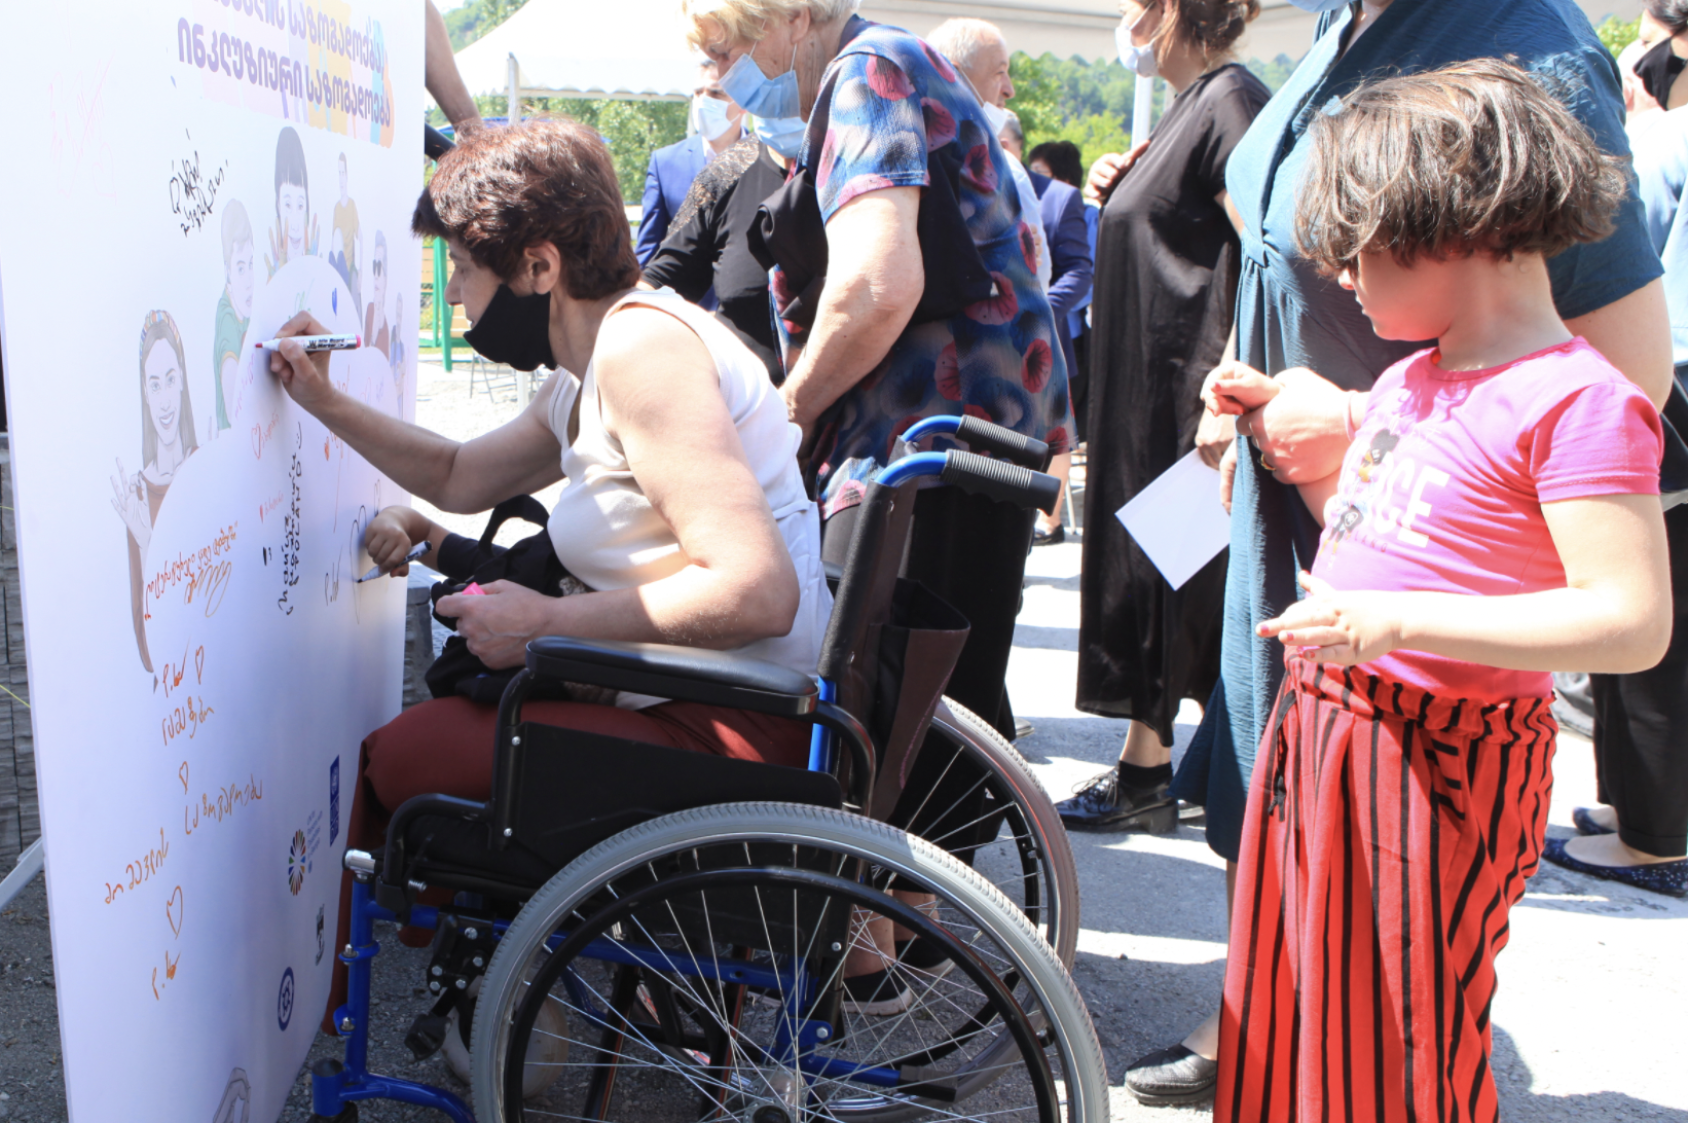 Una mujer en silla de ruedas firma una cartulina mientras varias personas permanecen cerca.